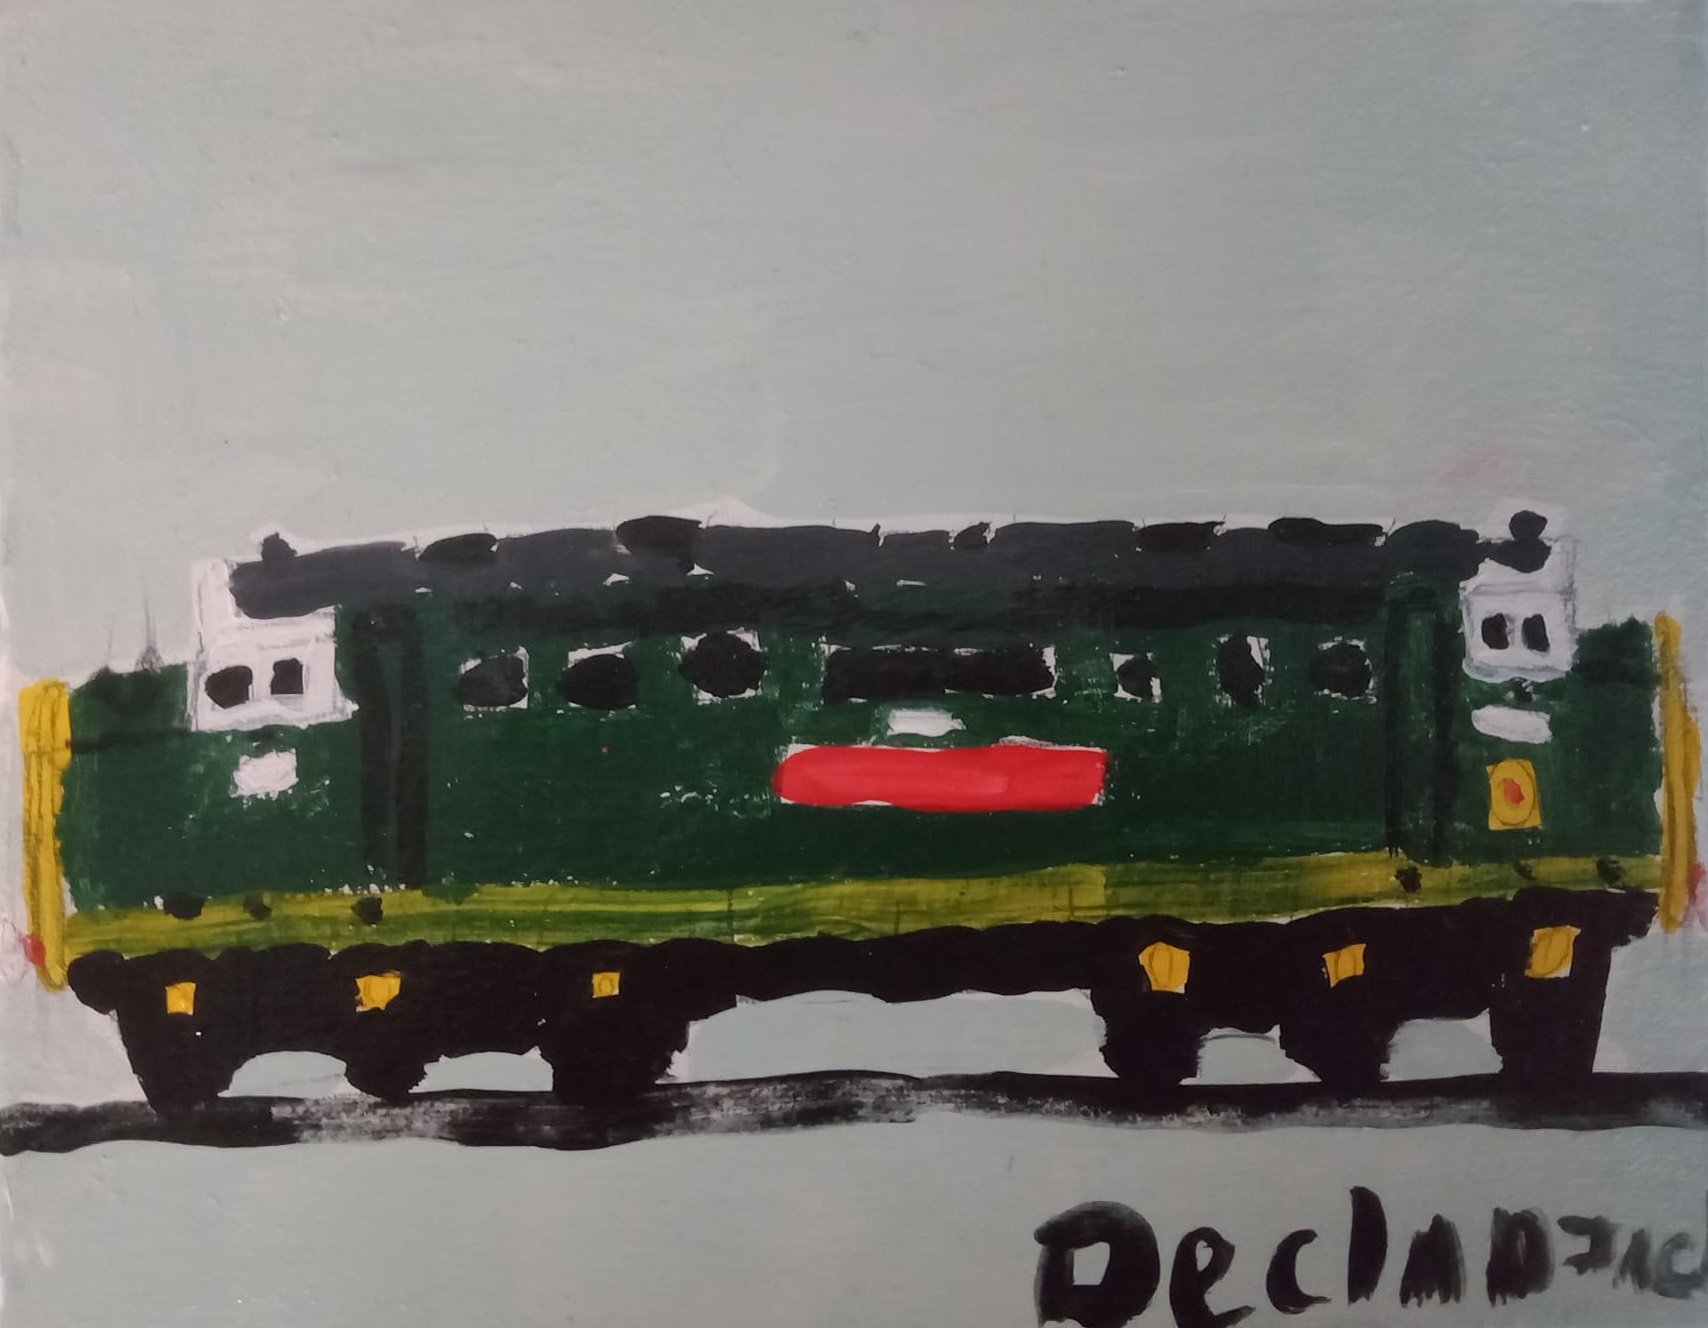 "Train" by Declan Jack